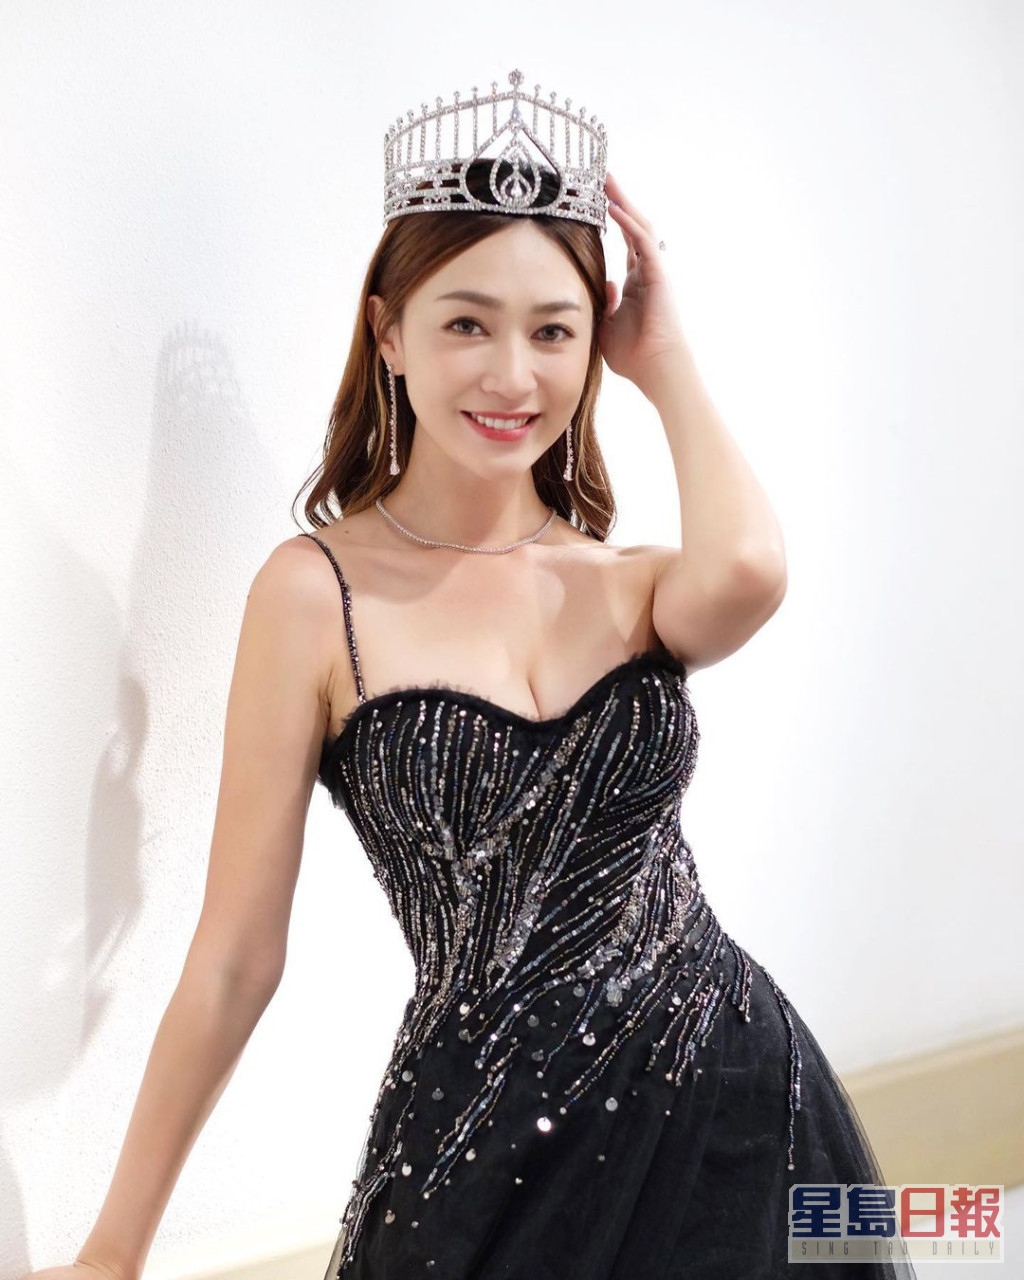 黄嘉雯是《2019年度香港小姐竞选》冠军。